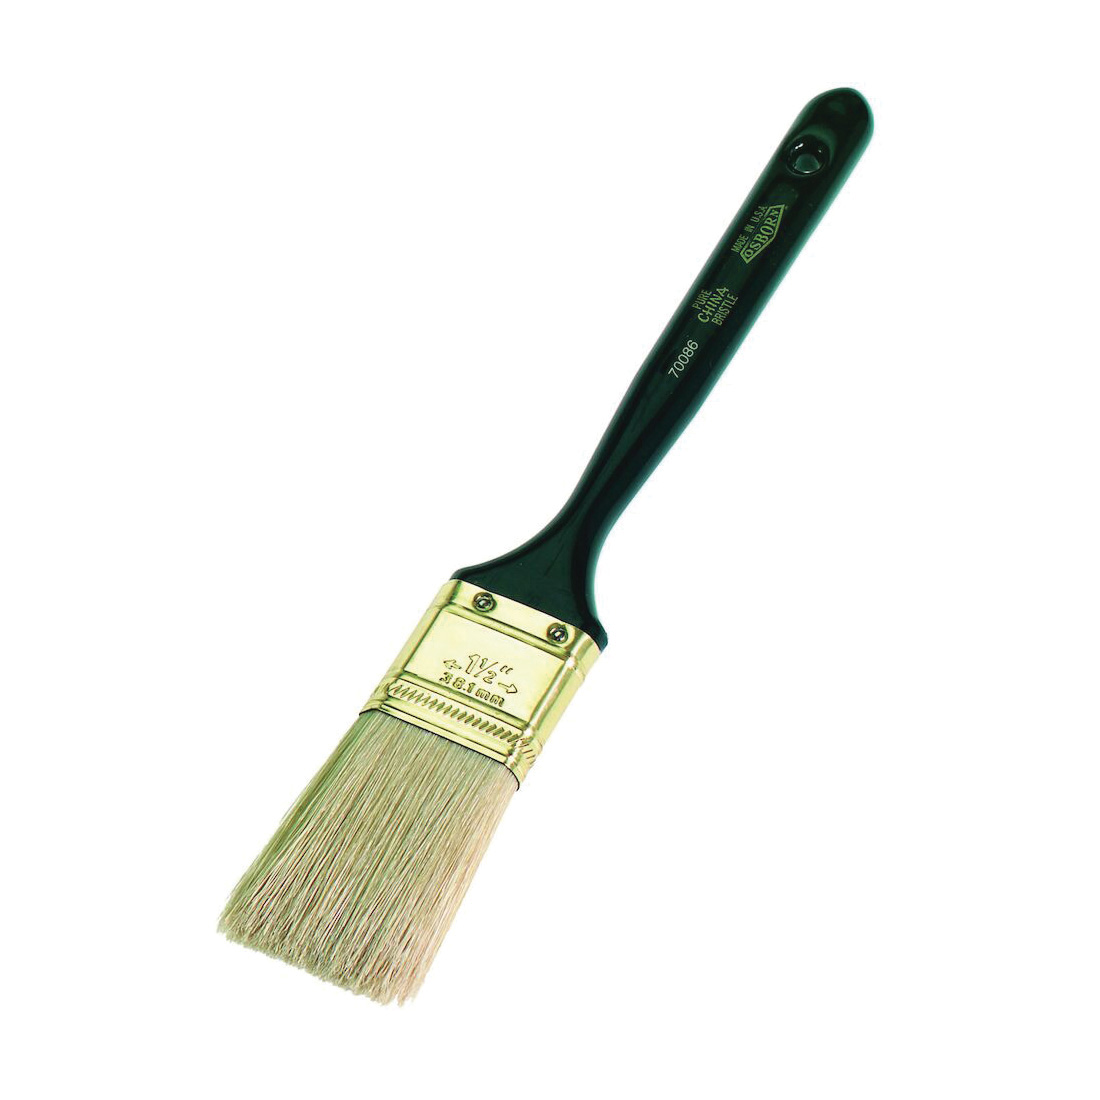 Osborn 0007007000 Varnish Brush, 2 in W China Bristle Brush, Plastic Handle, Enamels, Epoxy Coating, Oil Paints, Shellacs, Stains